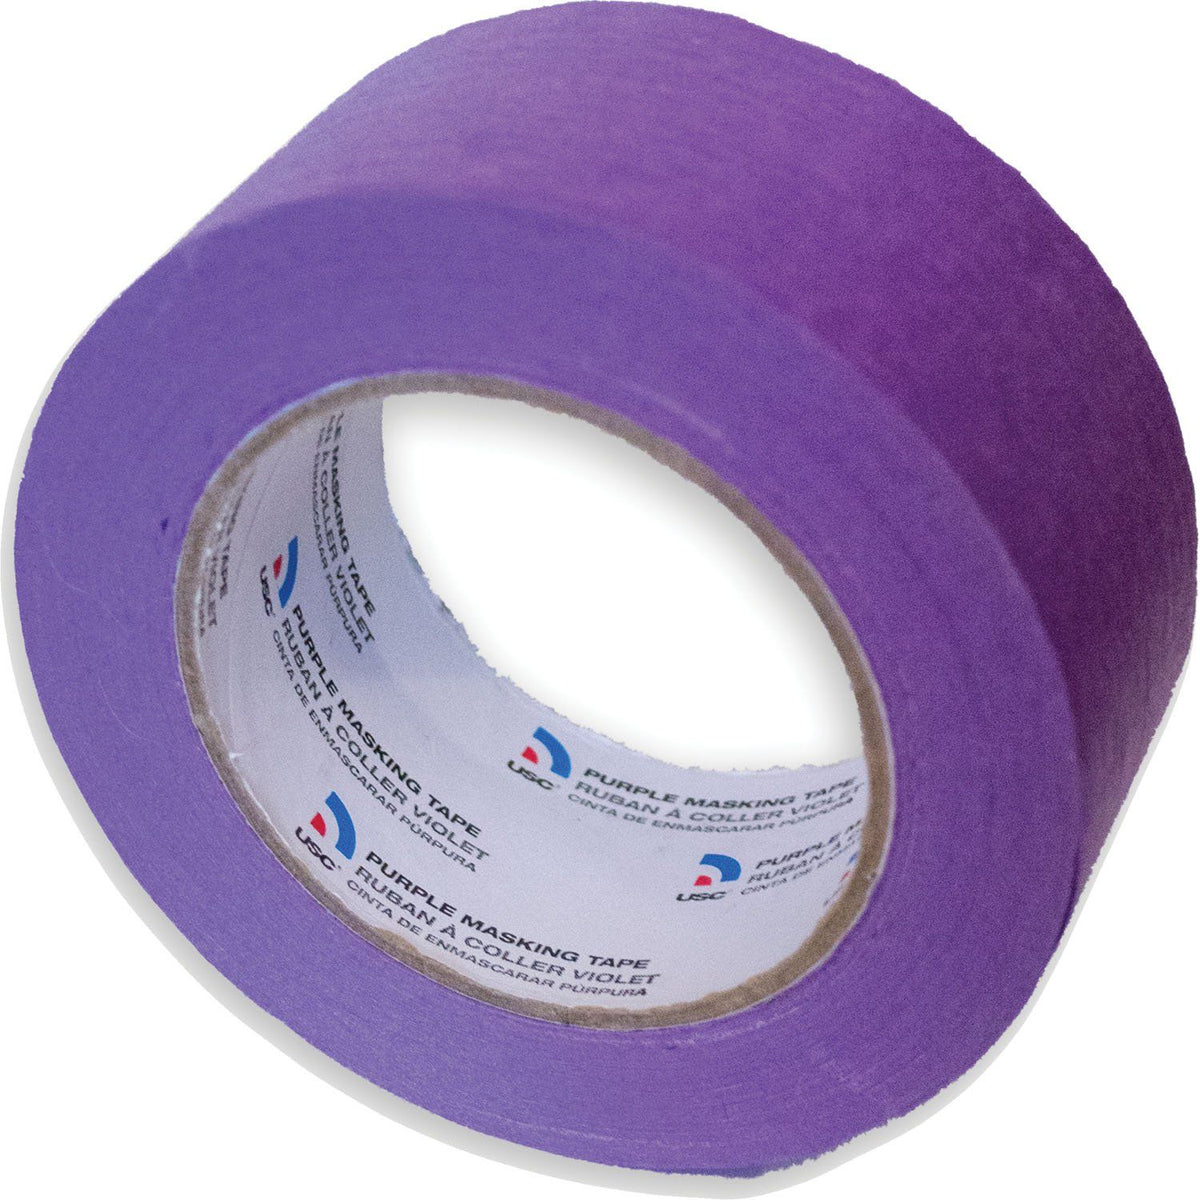 mt masking tape - purple dust